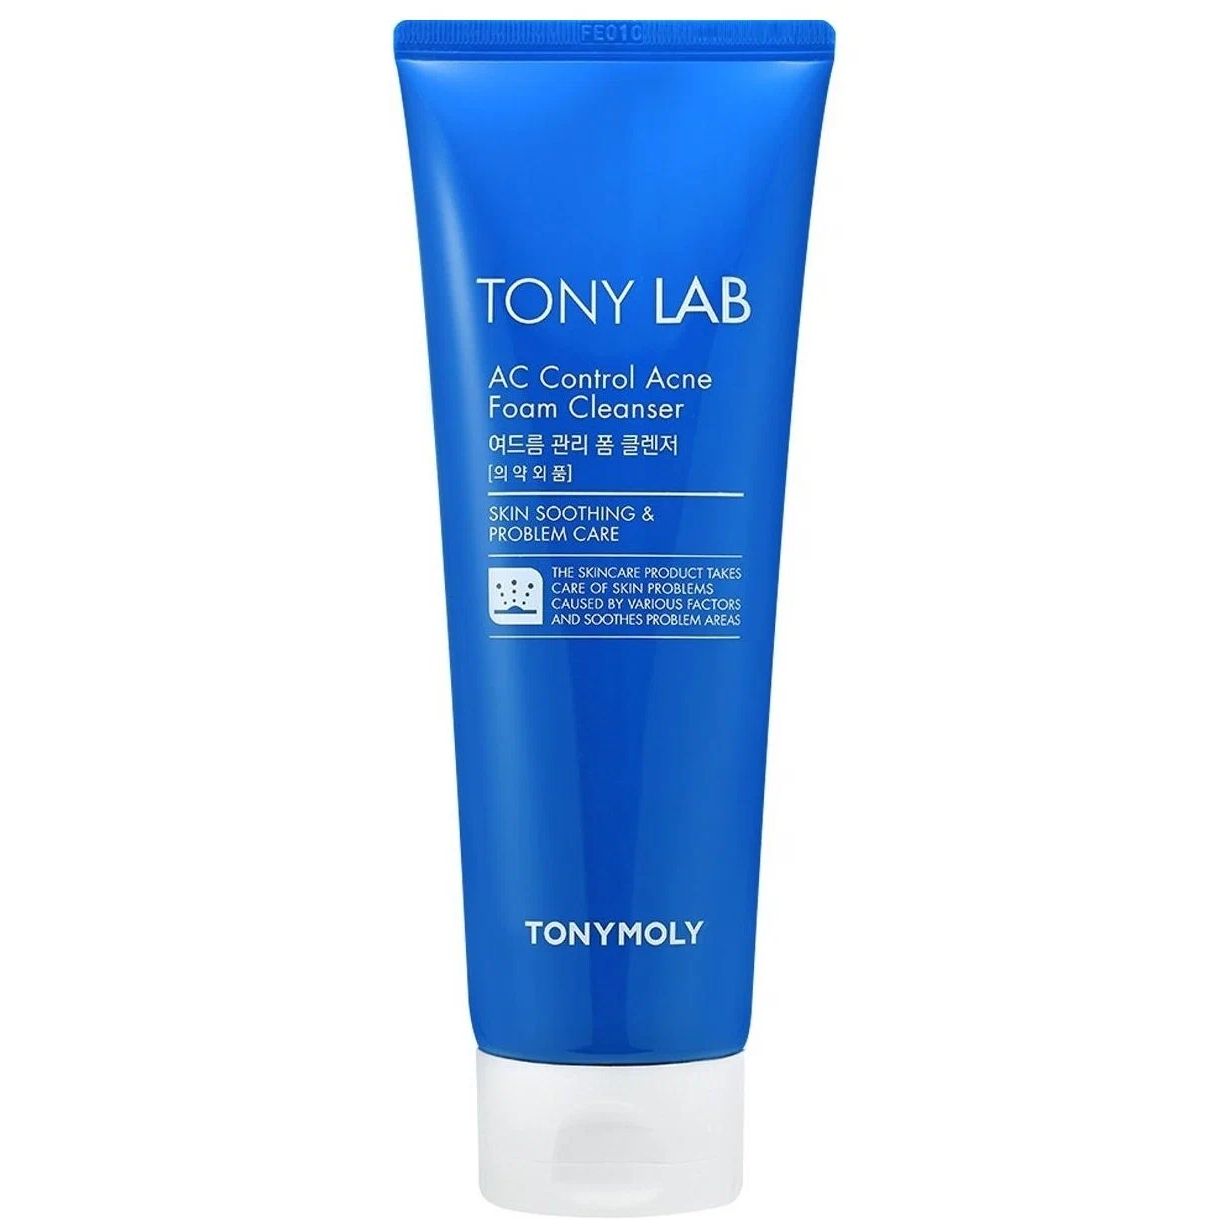 Пенка для умывания TONY MOLY Tony Lab AC Control Acne для проблемной кожи, 150 мл